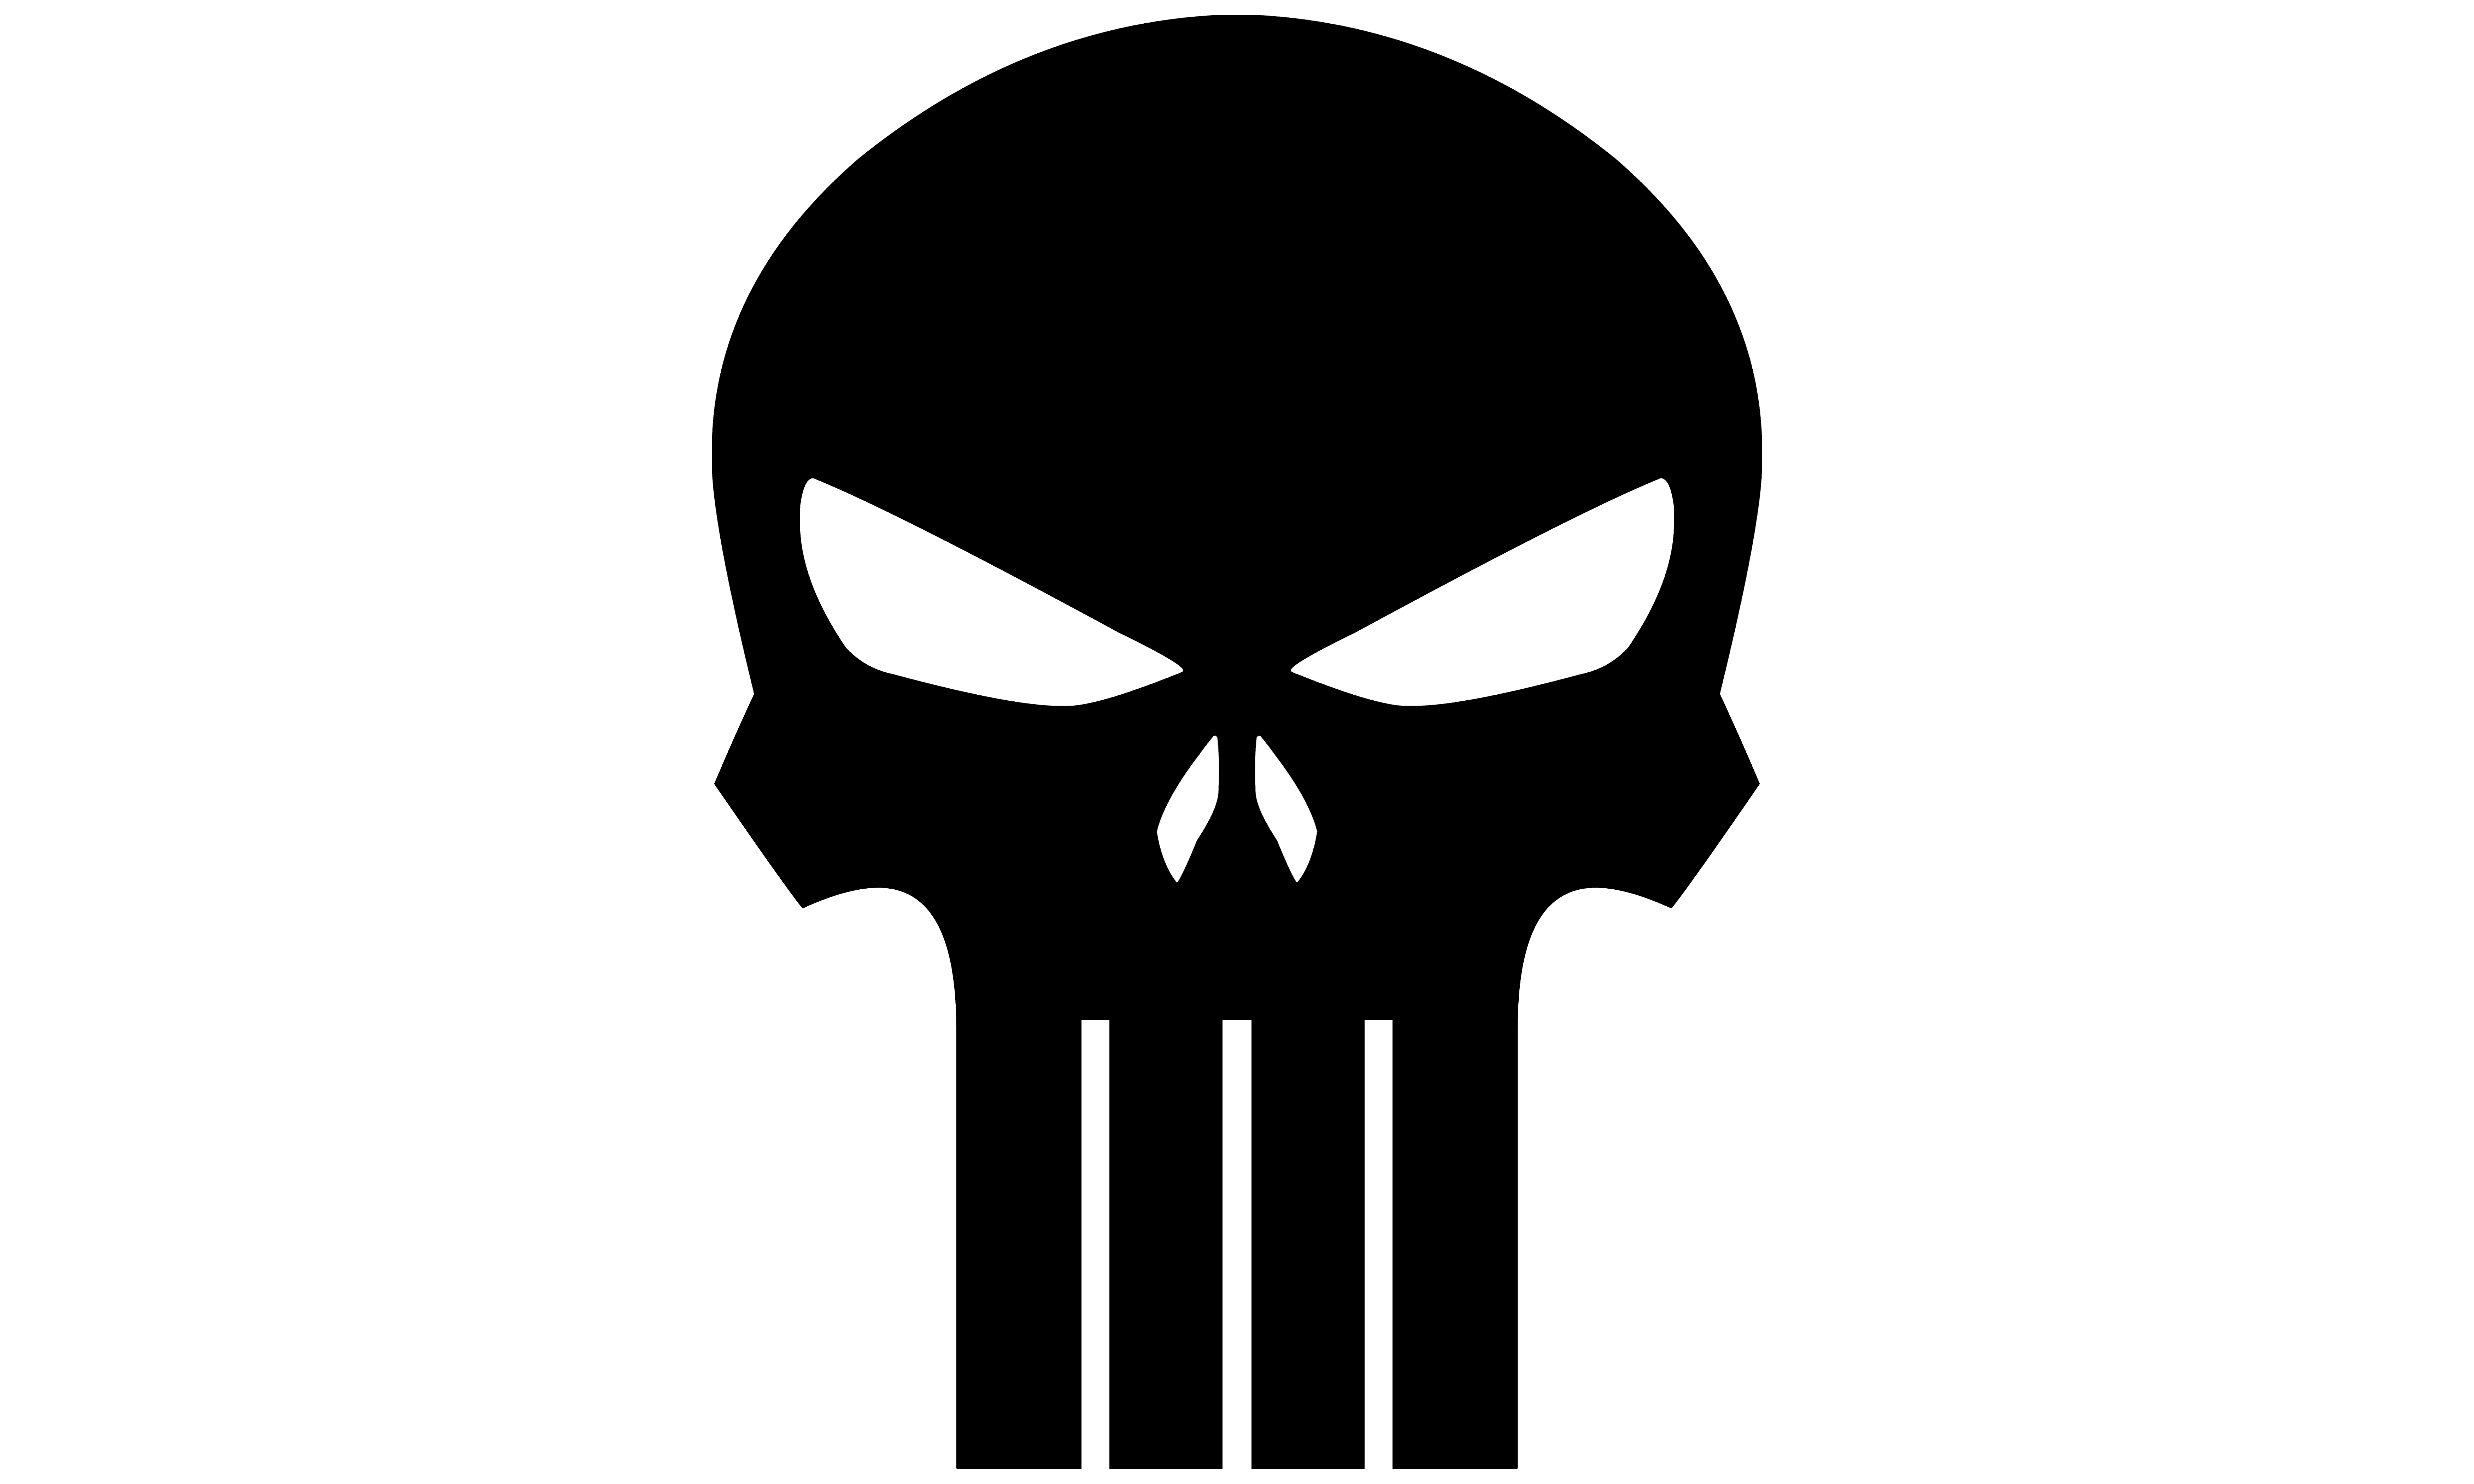 Punisher logo meaning